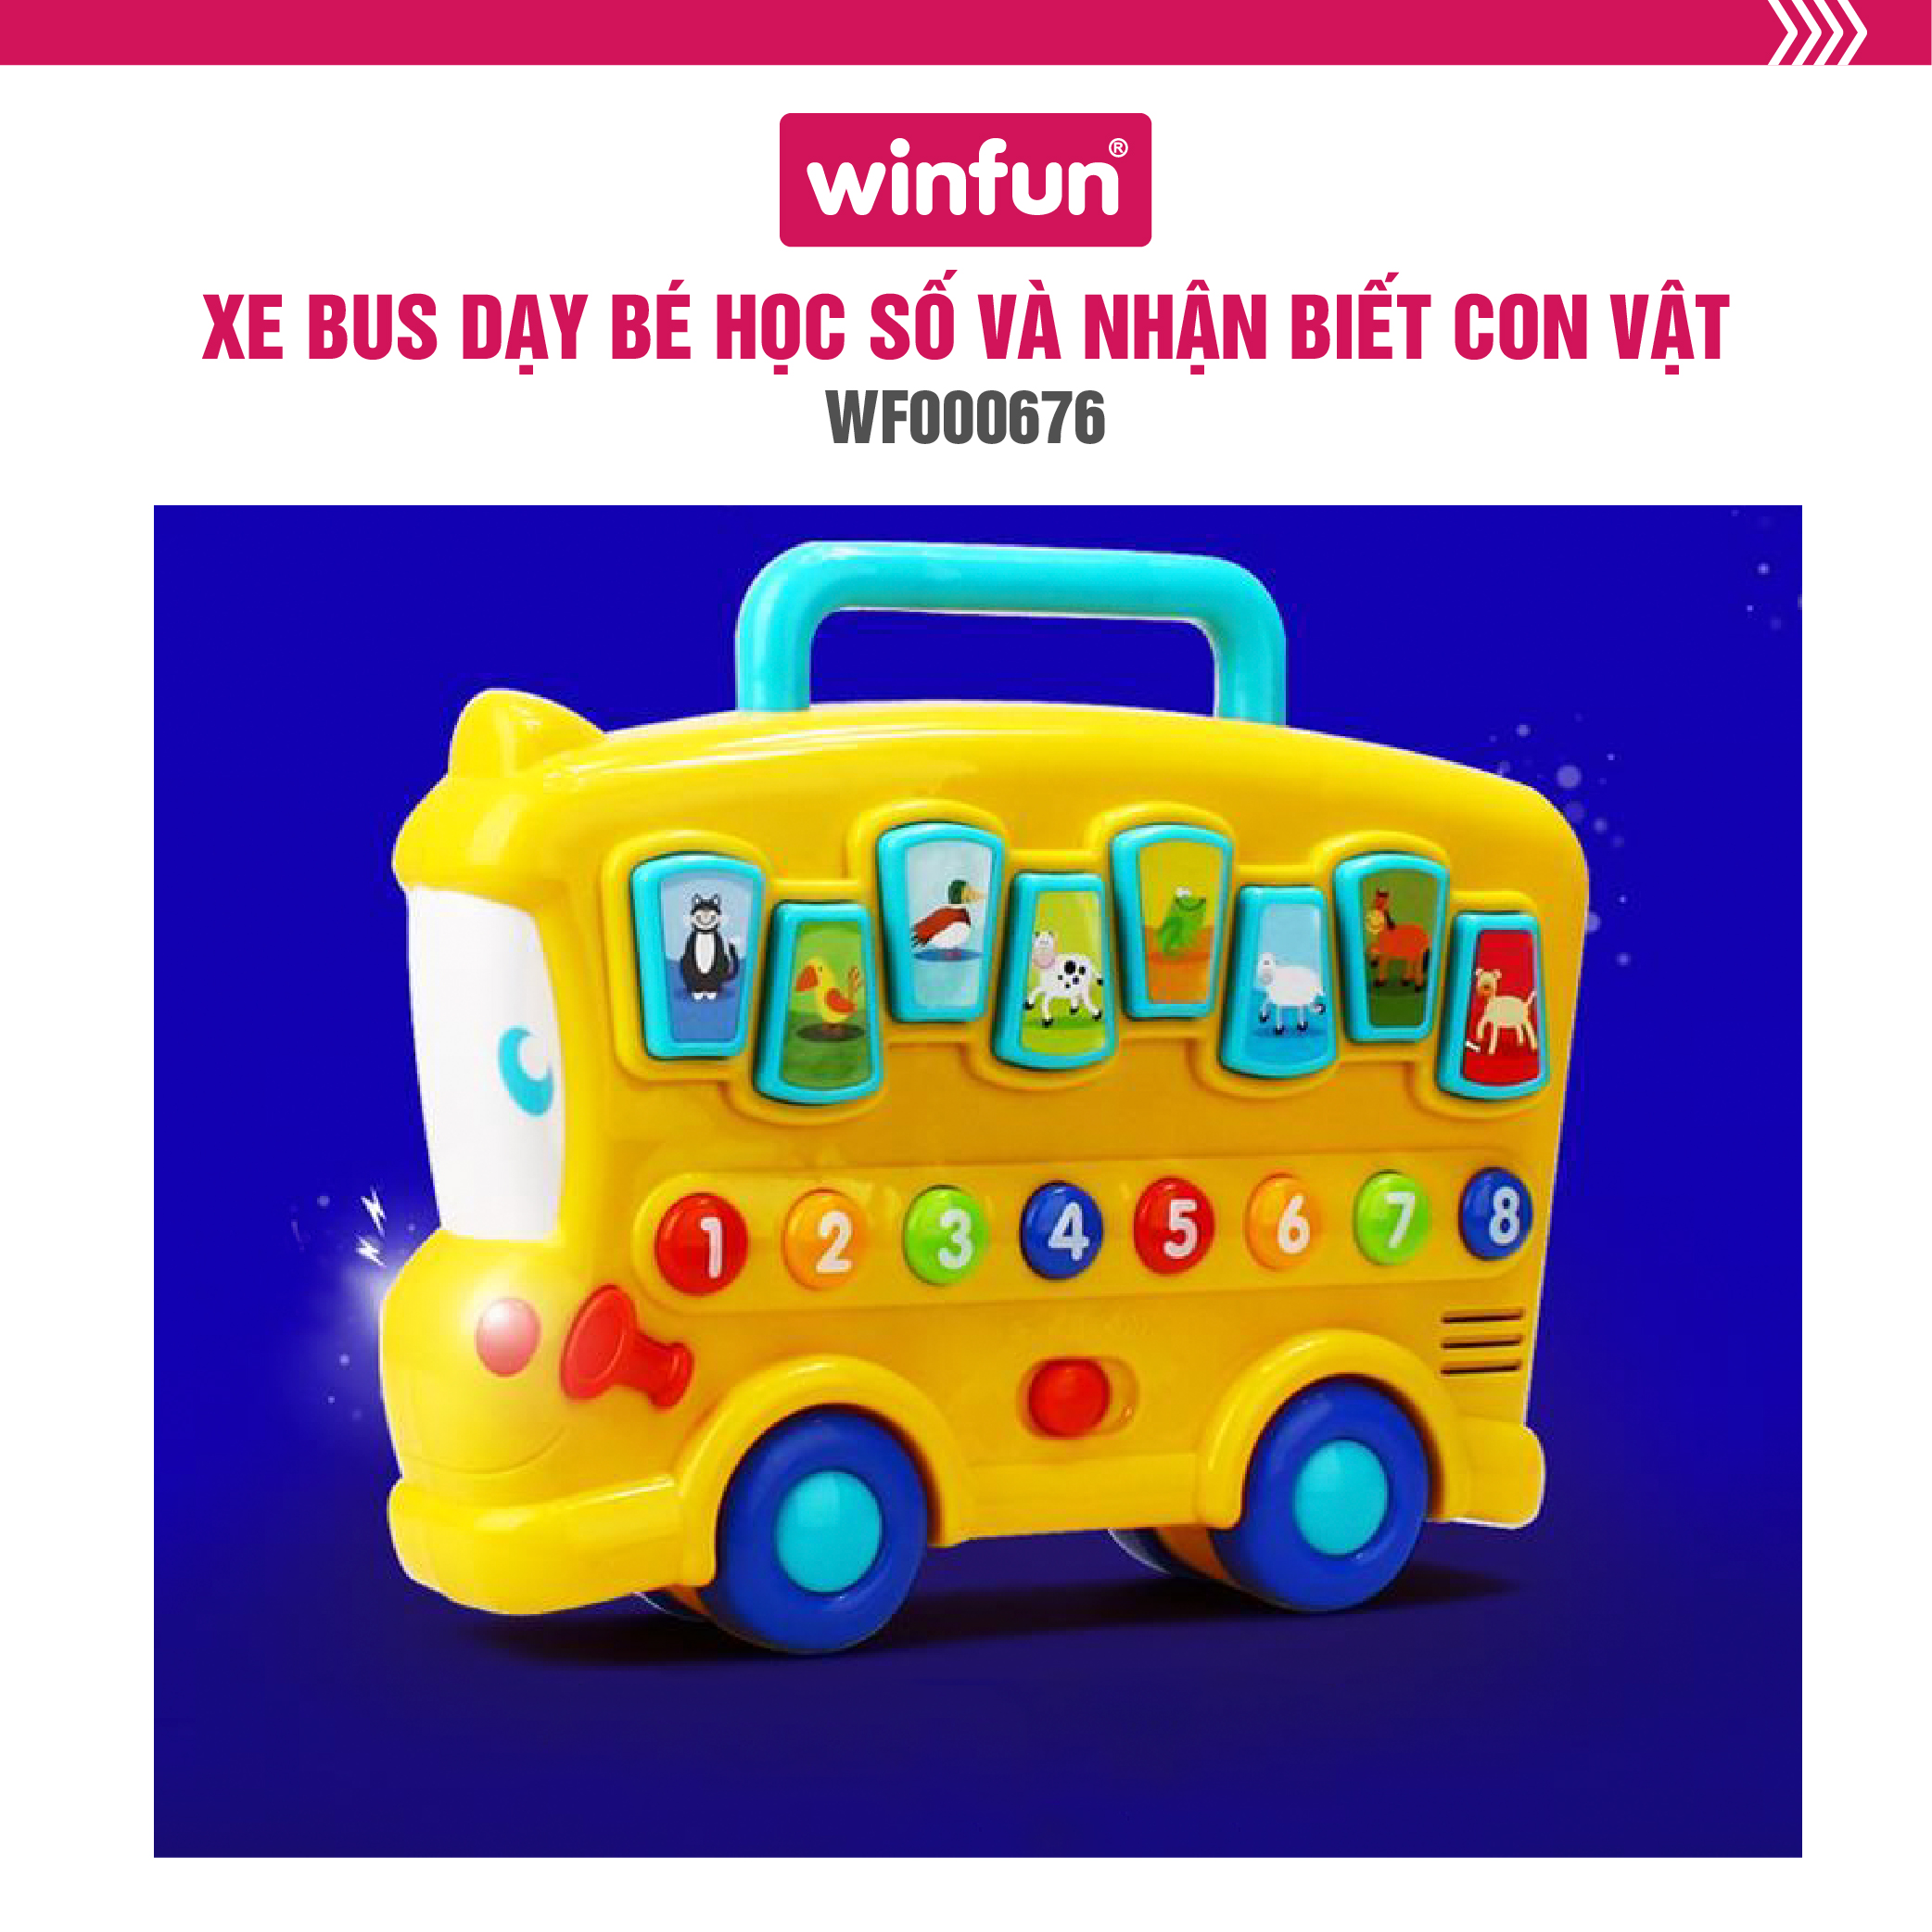 Xe Bus dạy bé học số và nhận biết con vật có đèn nhạc Winfun 0676 - Phát triển khả năng tự học, giáo dục sớm cho bé - tặng đồ chơi dễ thương